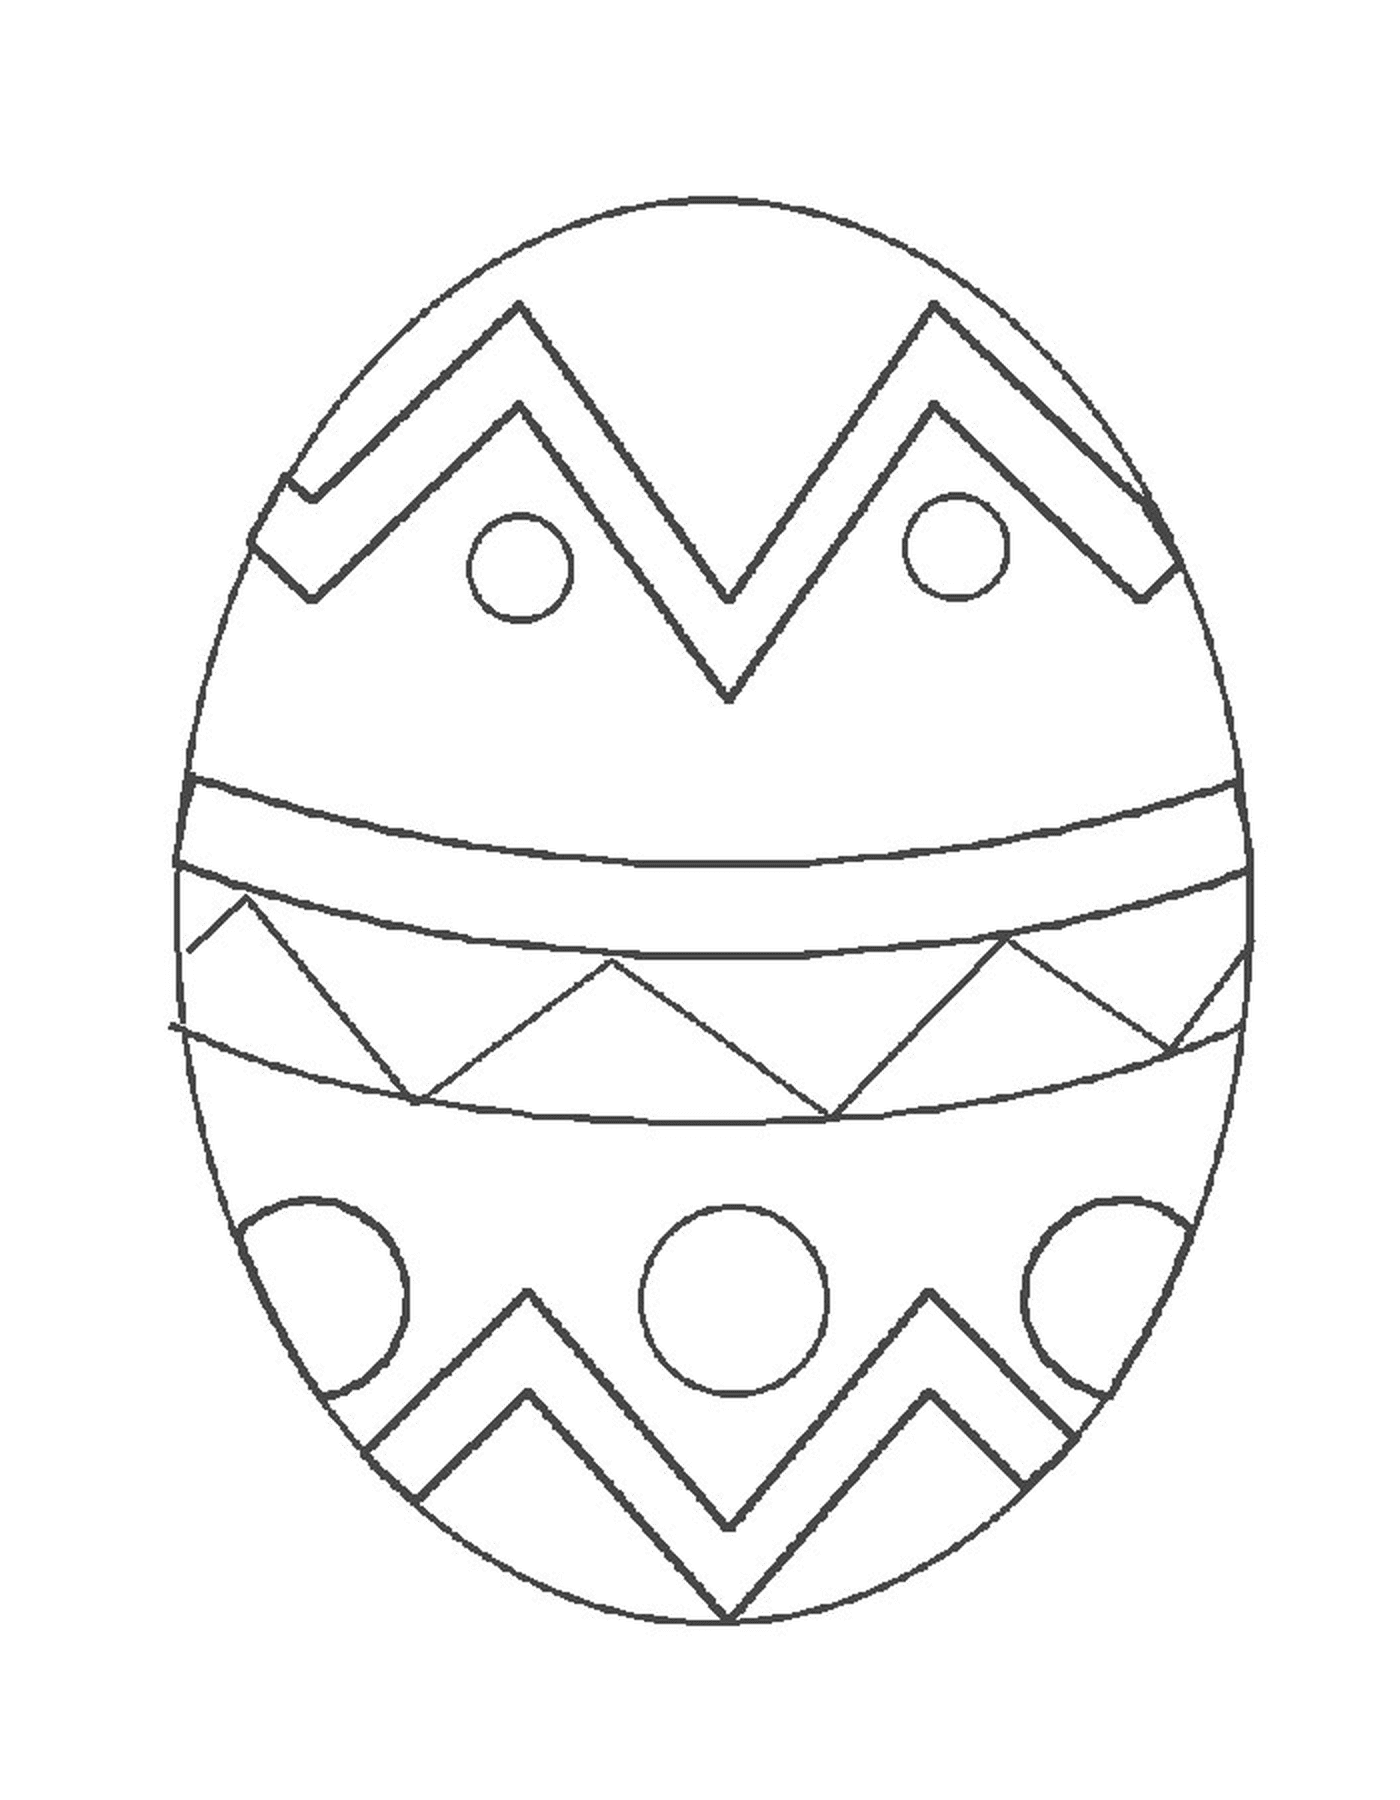  एक ईस्टर का अंडे जिसके लक्षणों से पता लगाया जा सकता है 